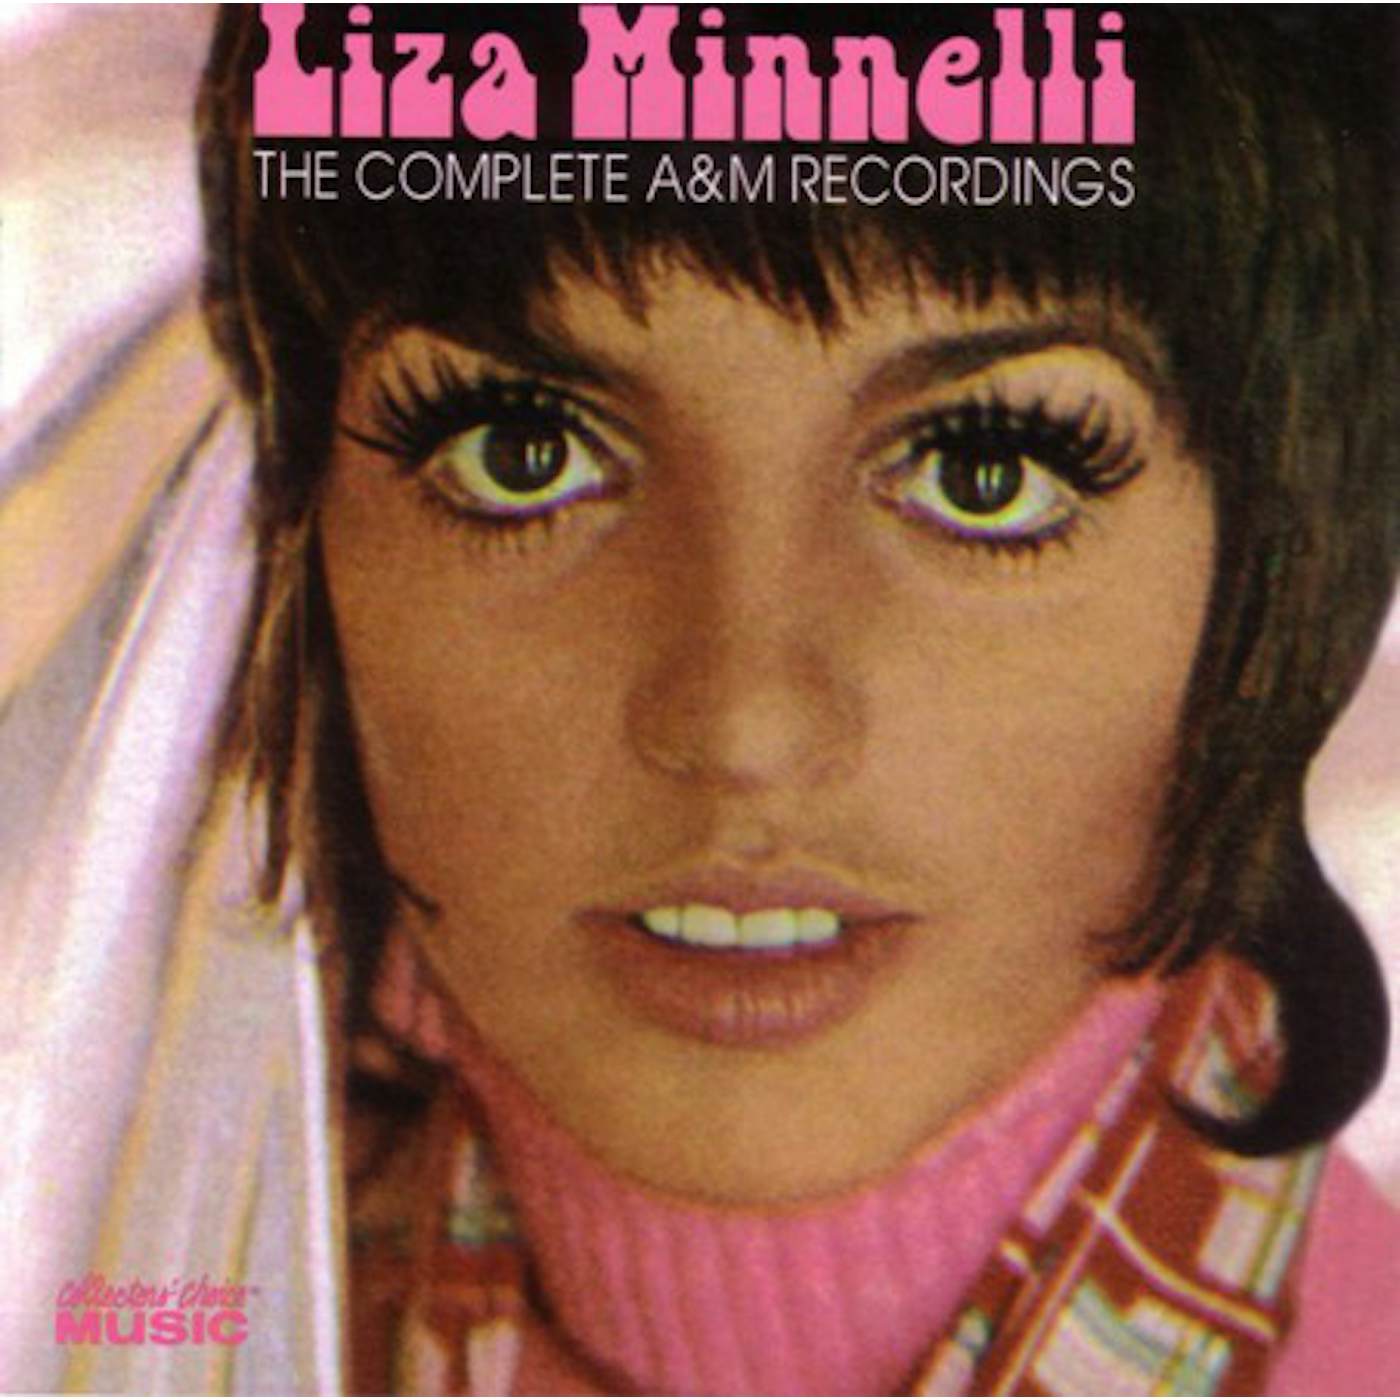 Liza Minnelli COMPLETE A & M RECORDINGS CD